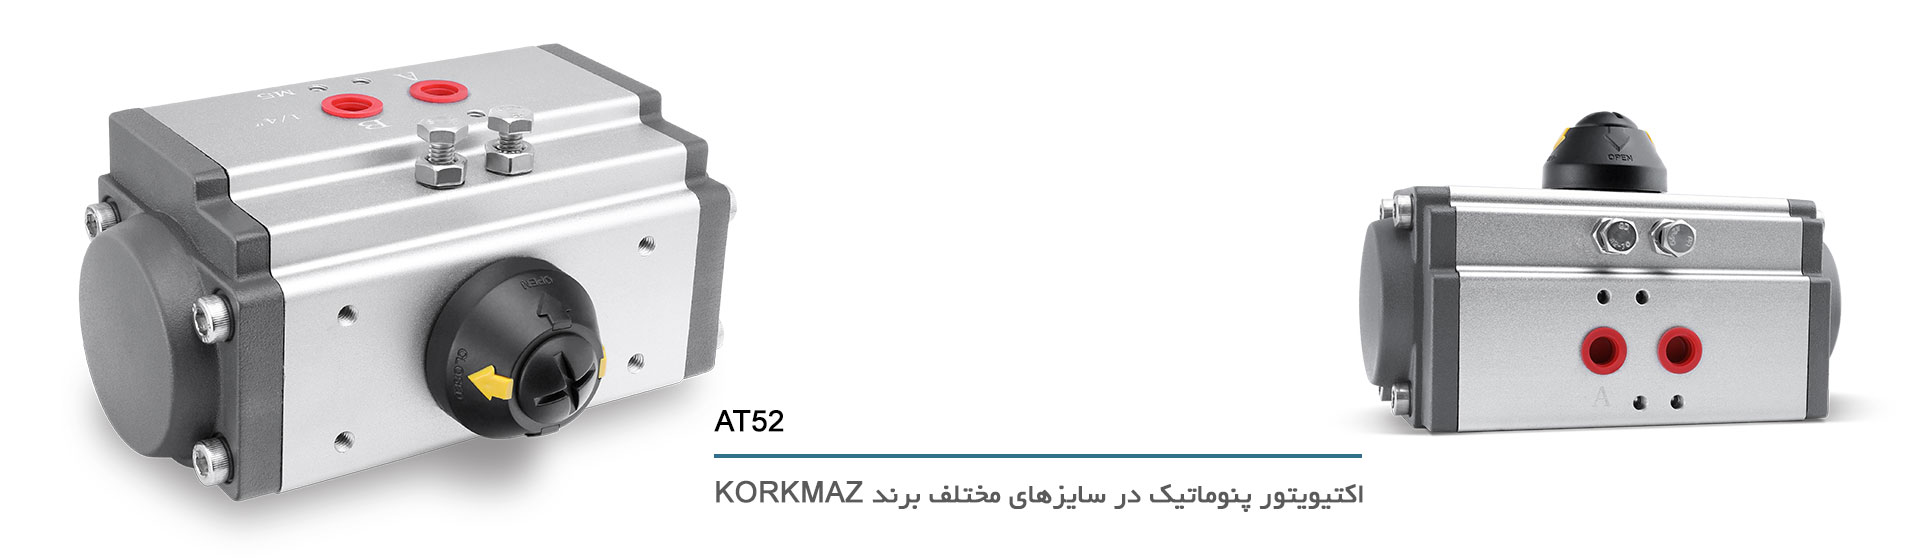 اکتیویتور پنوماتیک در سایزهای مختلف برند korkmaz,AT52